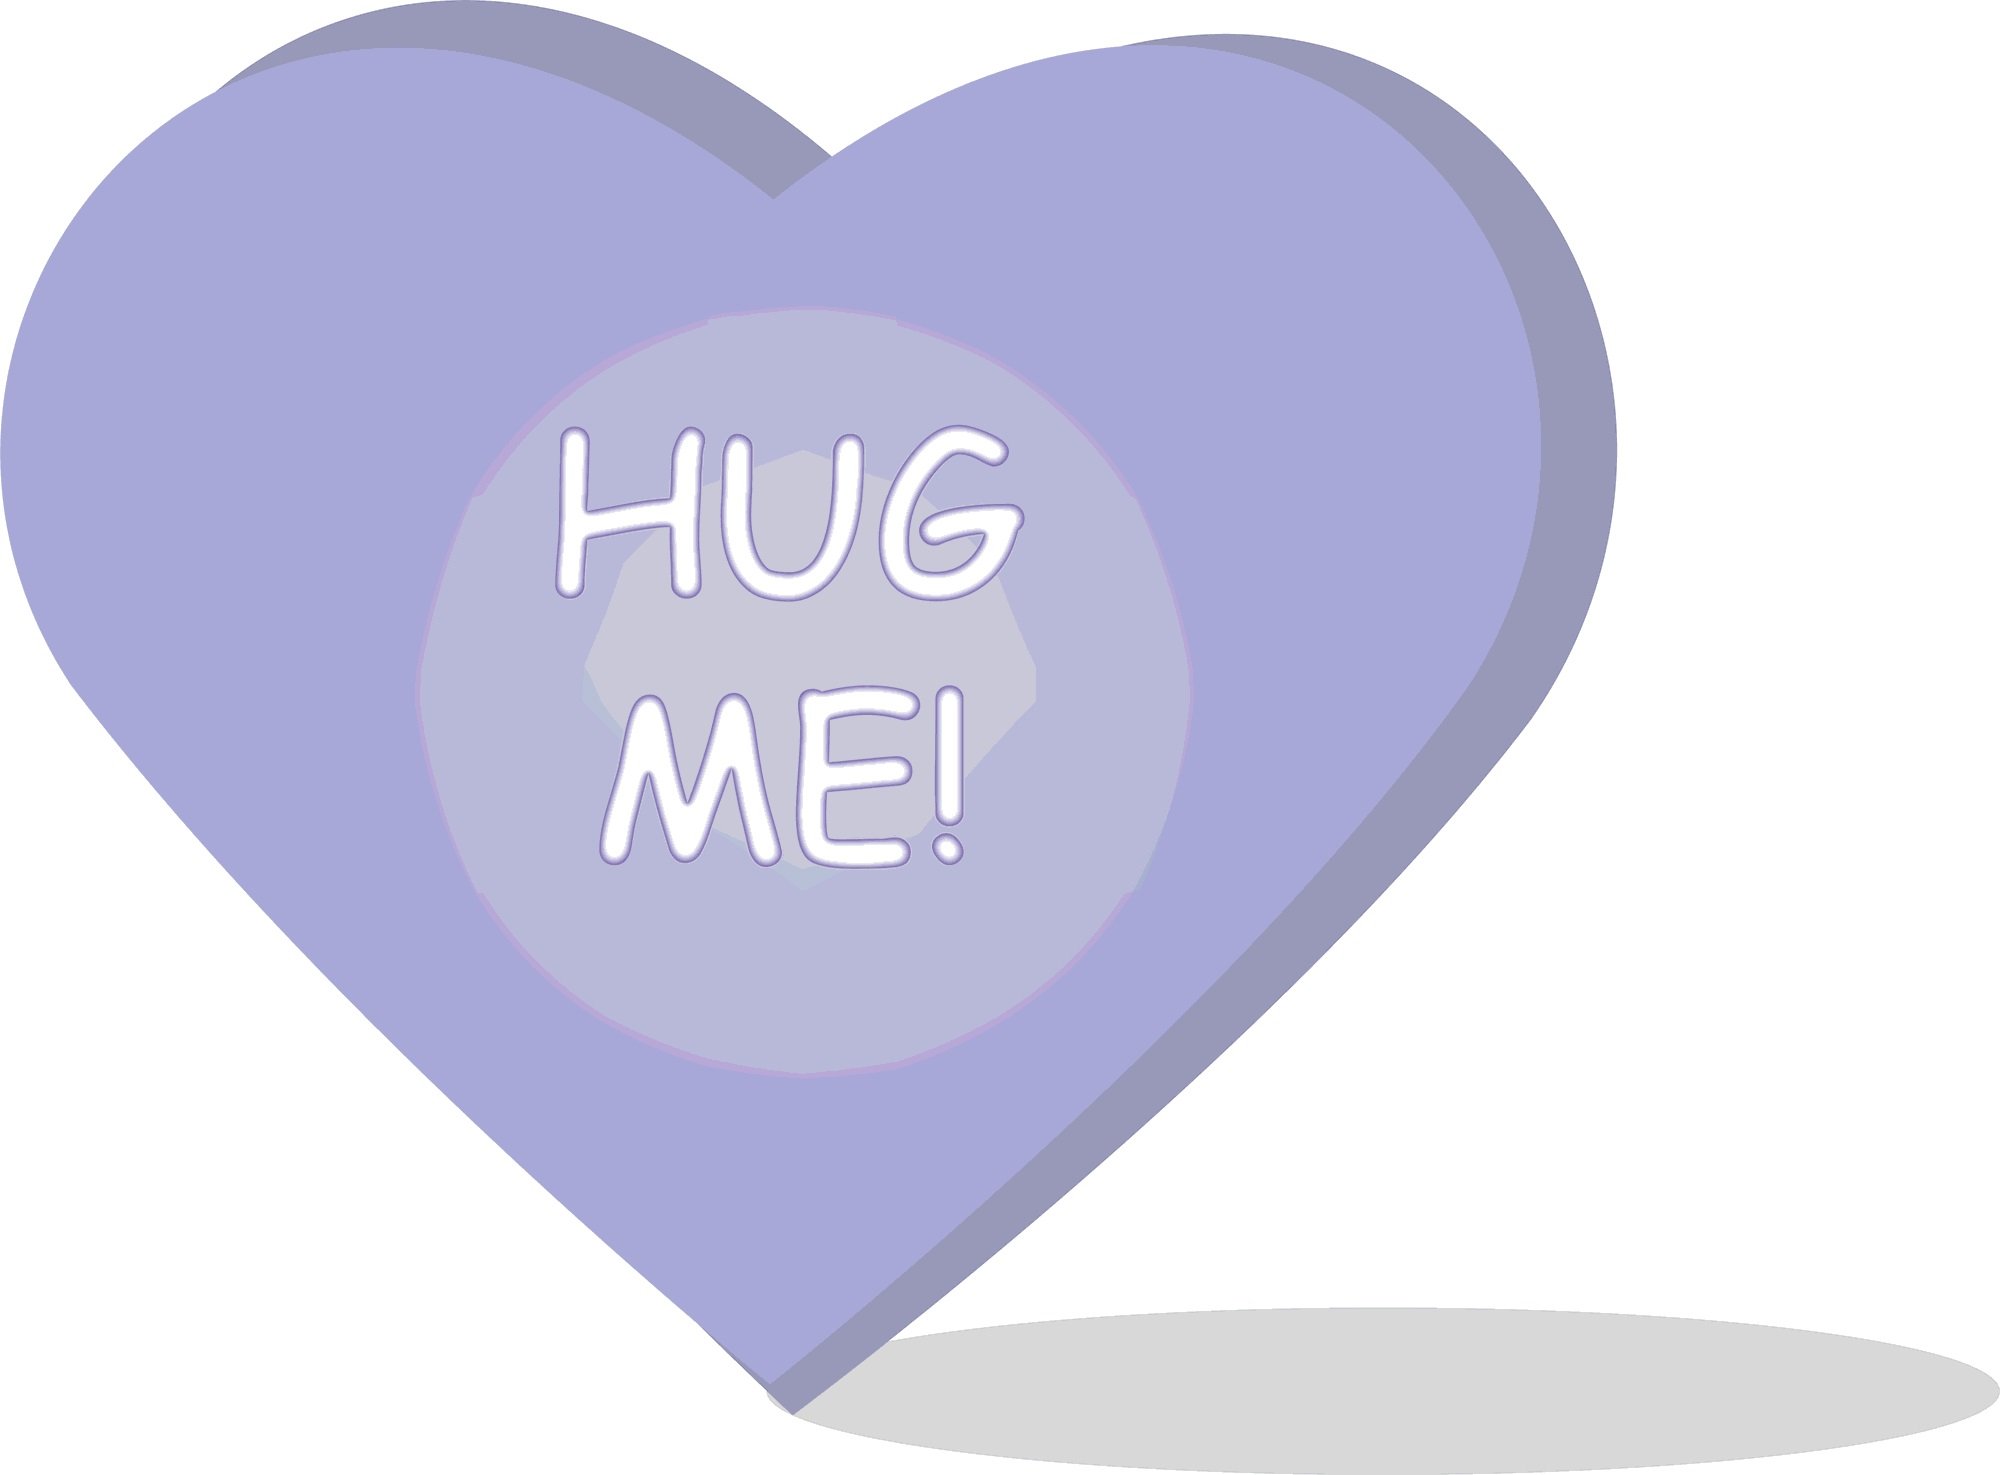 hug, Hugging, Couple, Love, Mood, People, Men, Women, Happy, Poster Wallpaper